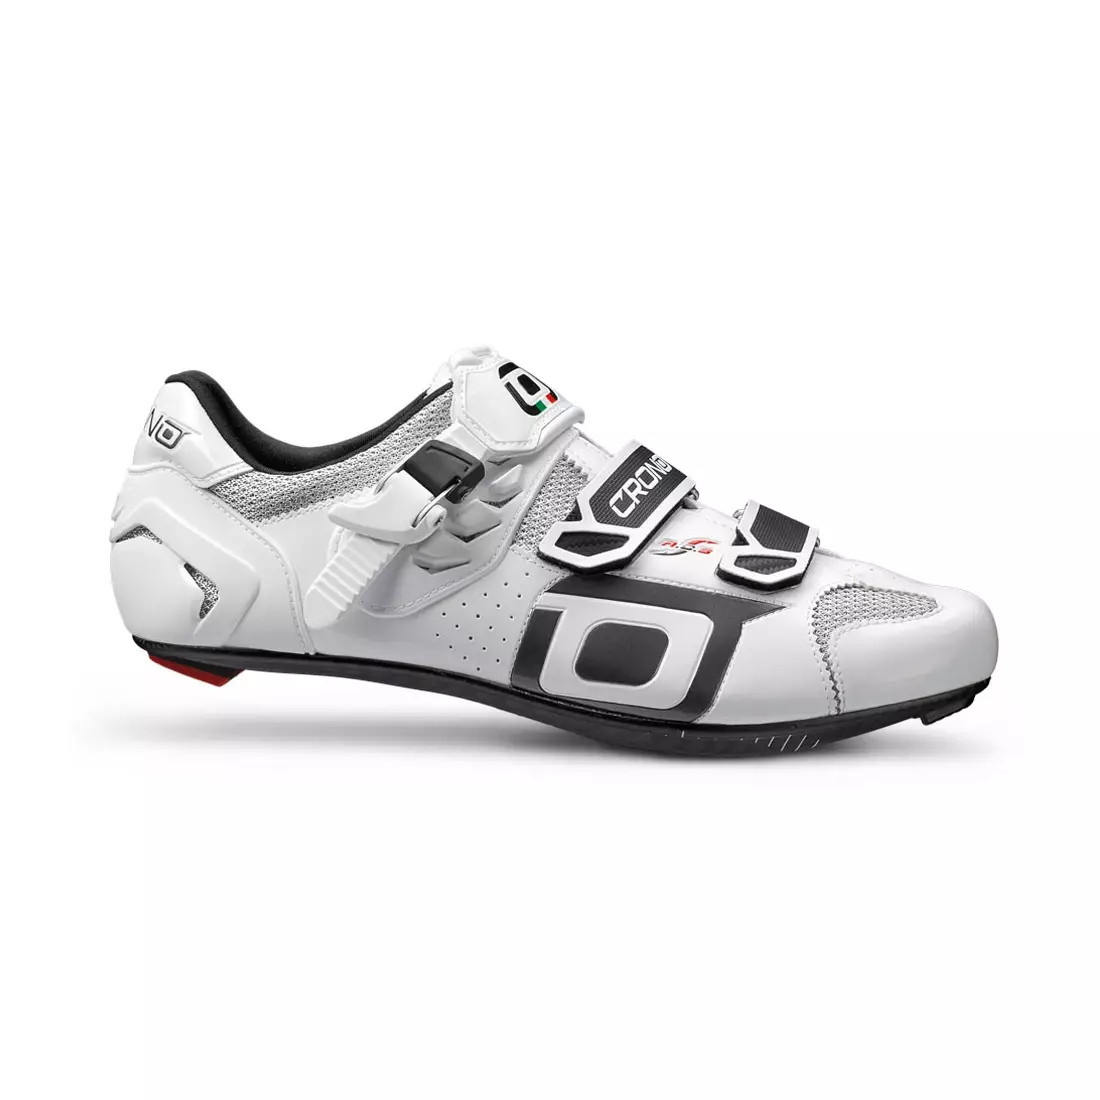 CRONO CLONE NYLON - országúti kerékpáros cipő - szín: fehér